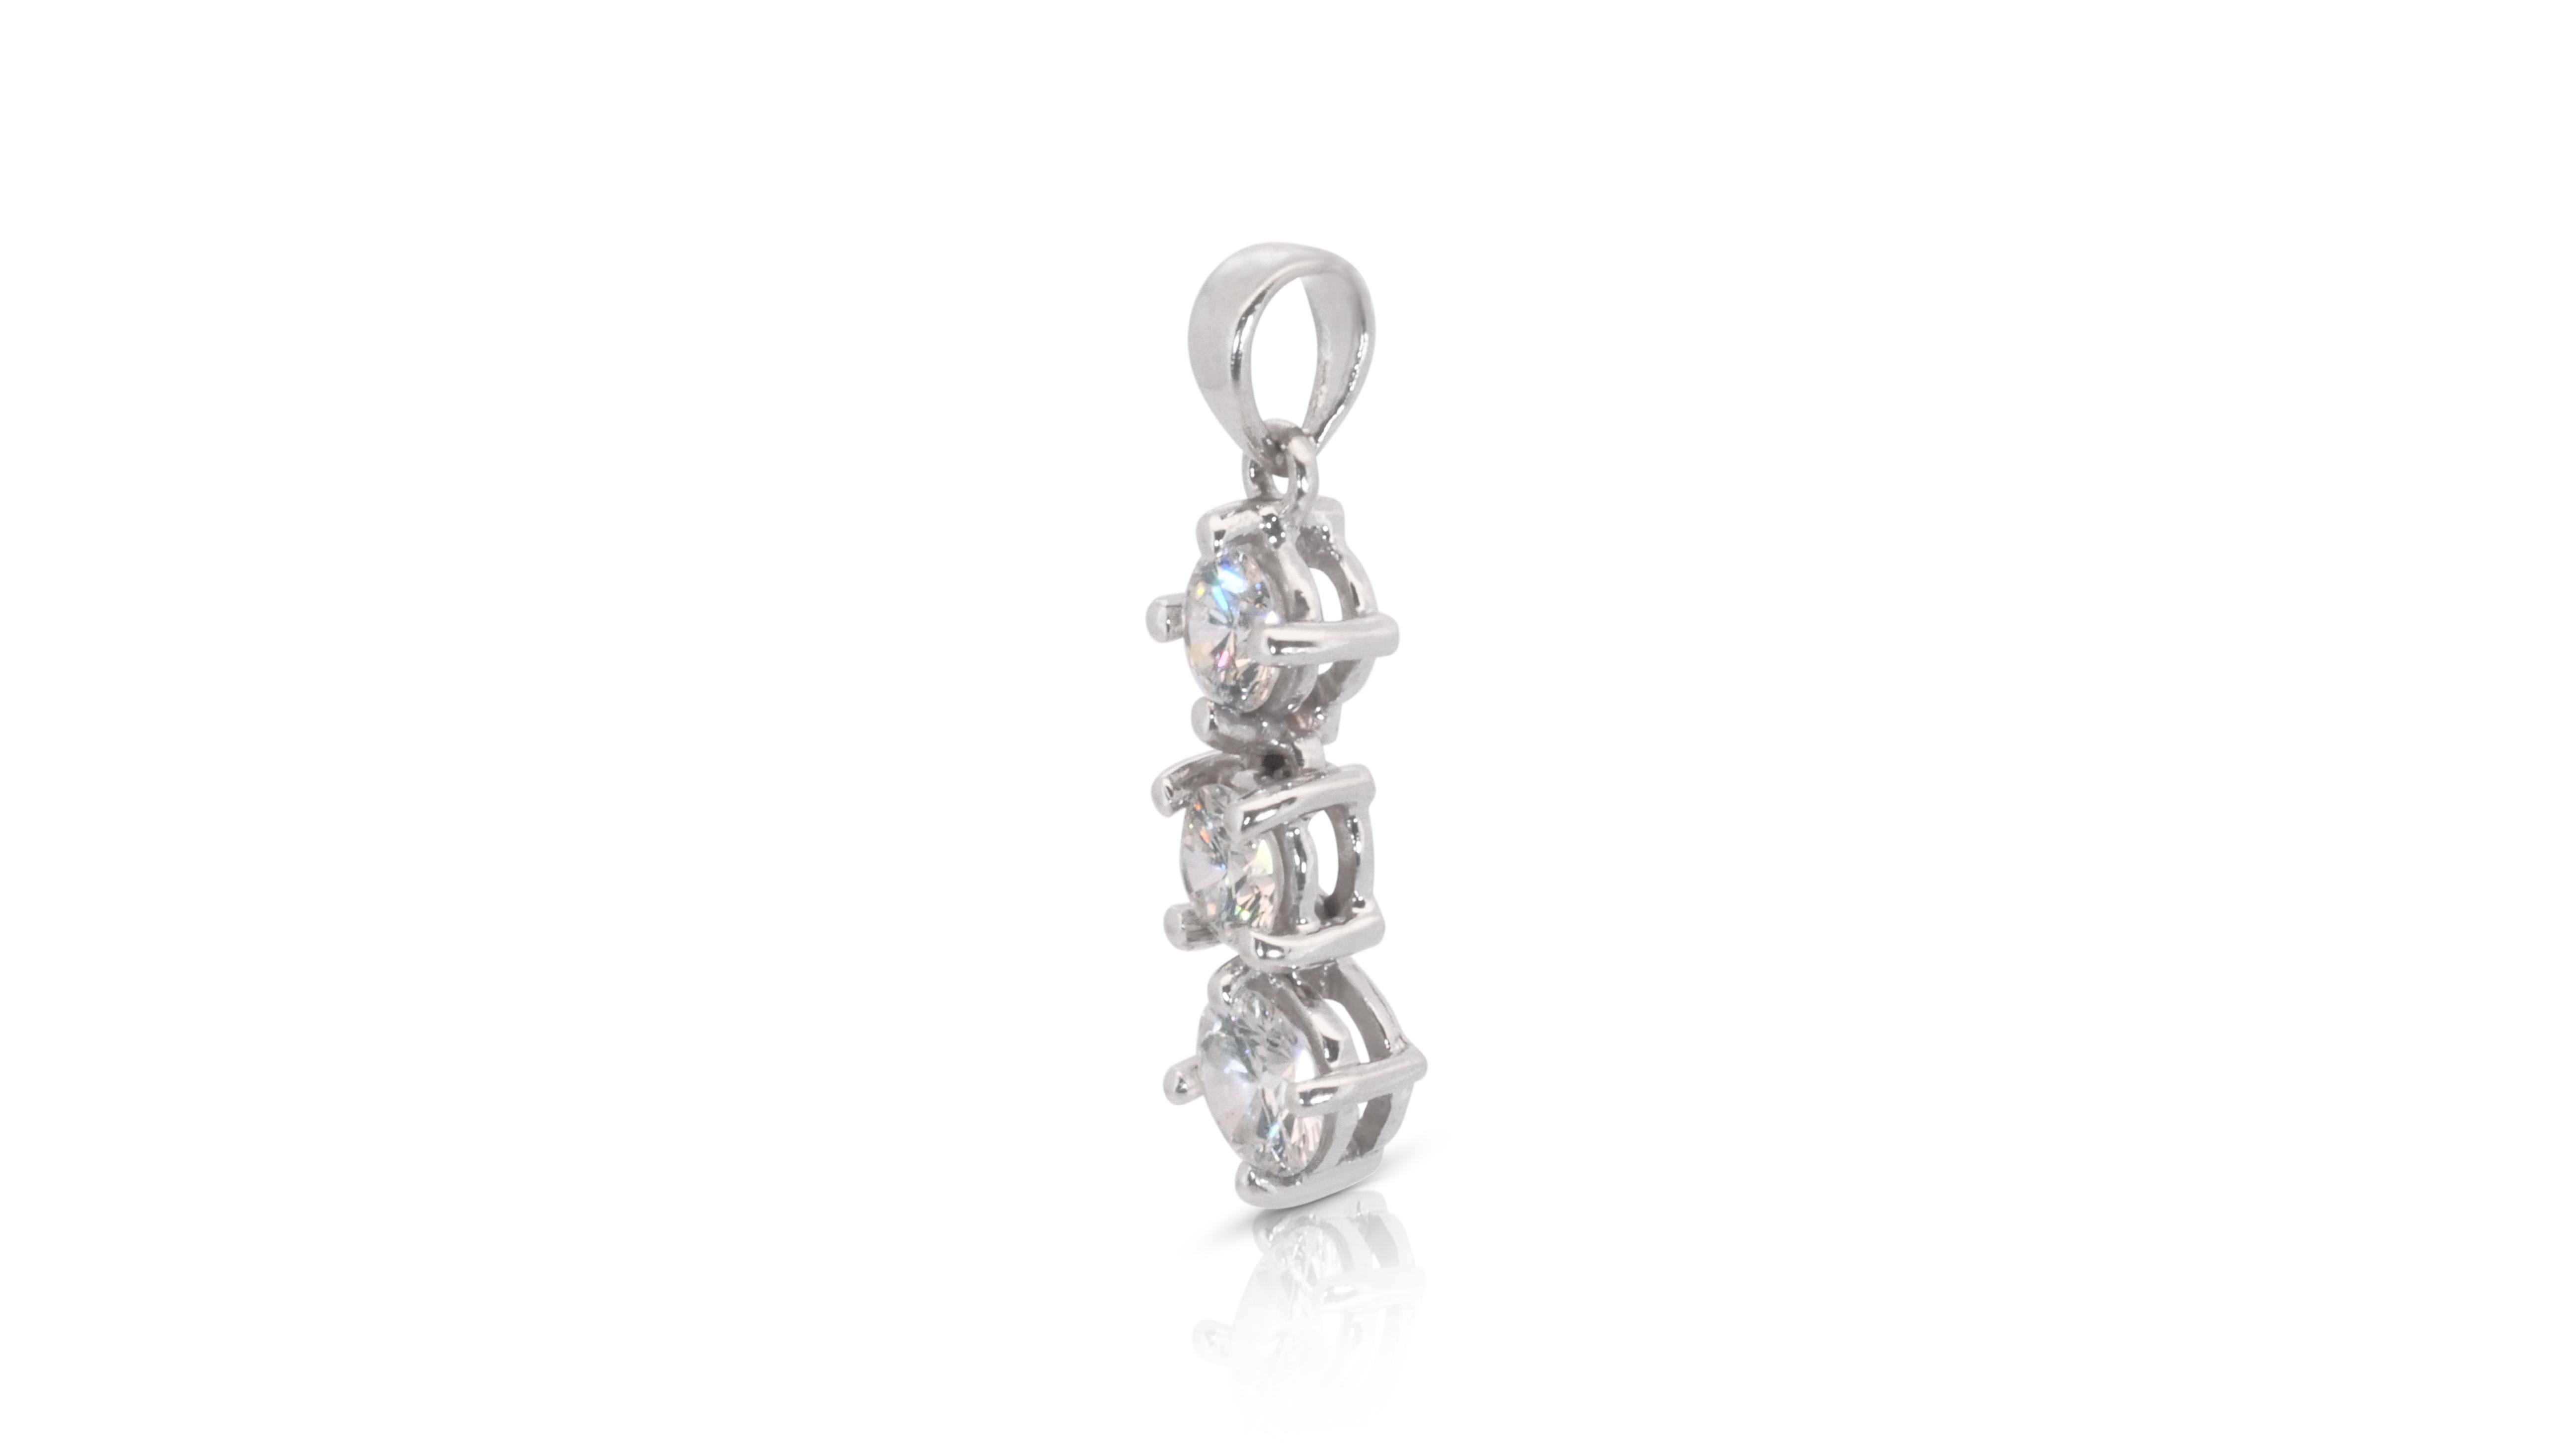 Un élégant pendentif en forme de goutte avec d'éblouissants diamants ronds de 0,52 carat. Les bijoux sont fabriqués en platine avec un polissage de haute qualité. Il est livré avec une boîte à bijoux fantaisie. Aucune chaîne n'est incluse.

3